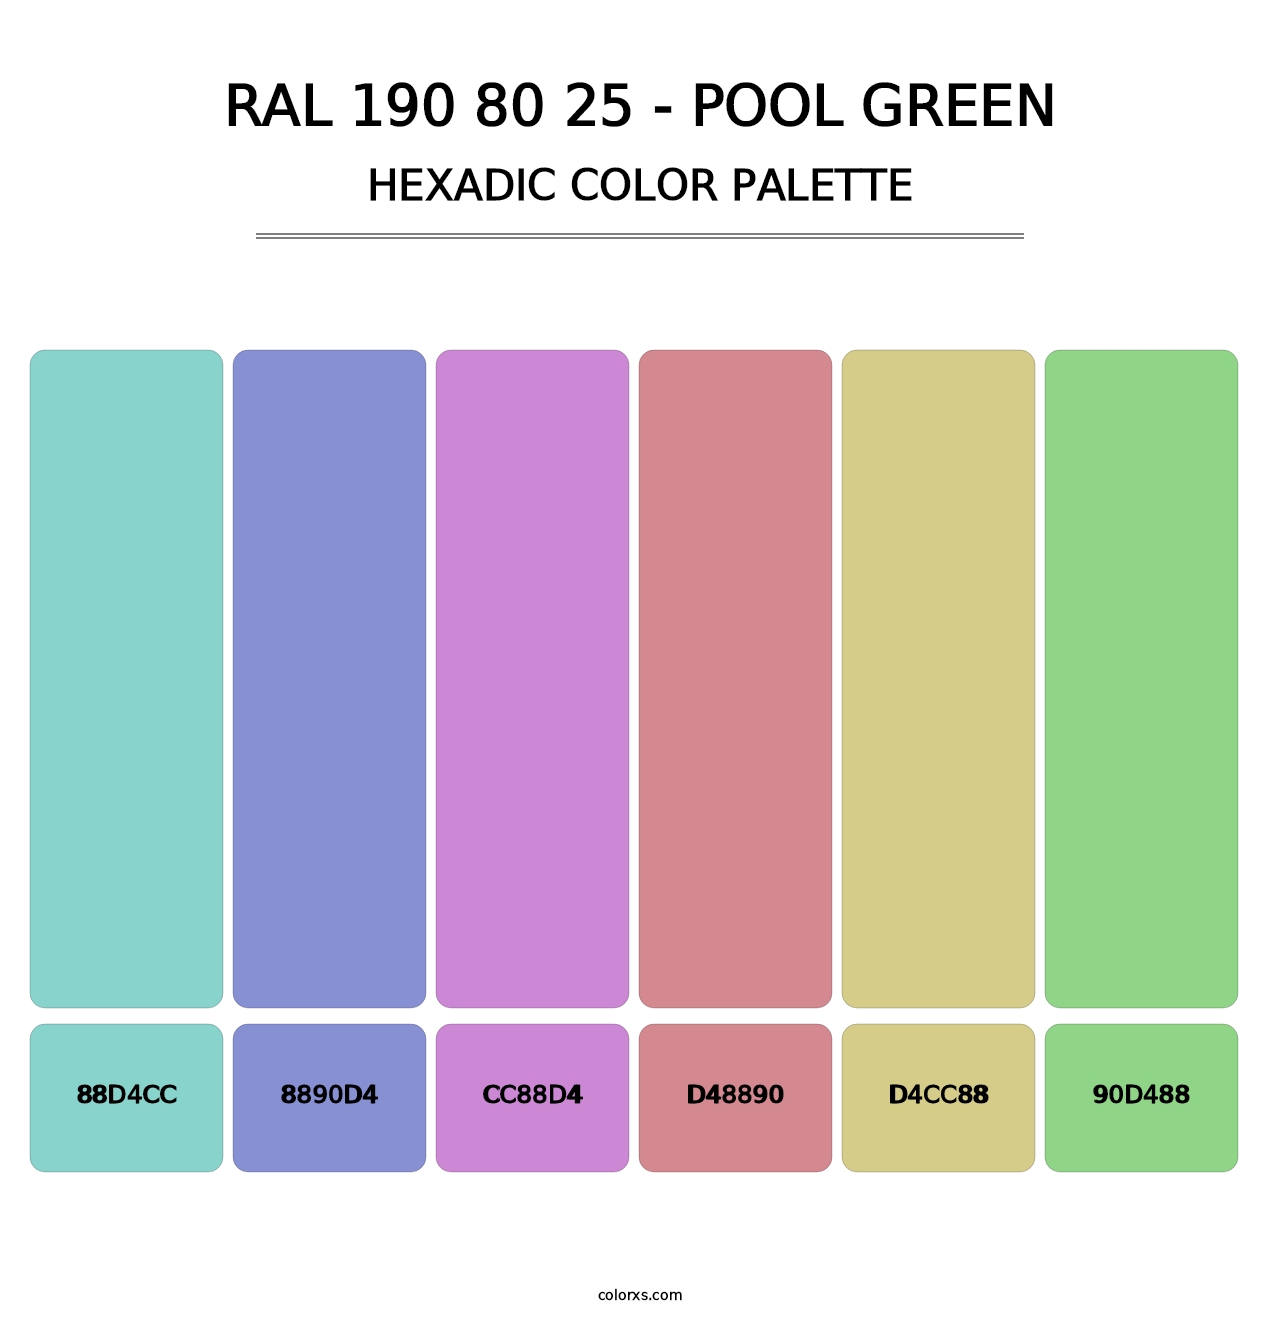 RAL 190 80 25 - Pool Green - Hexadic Color Palette